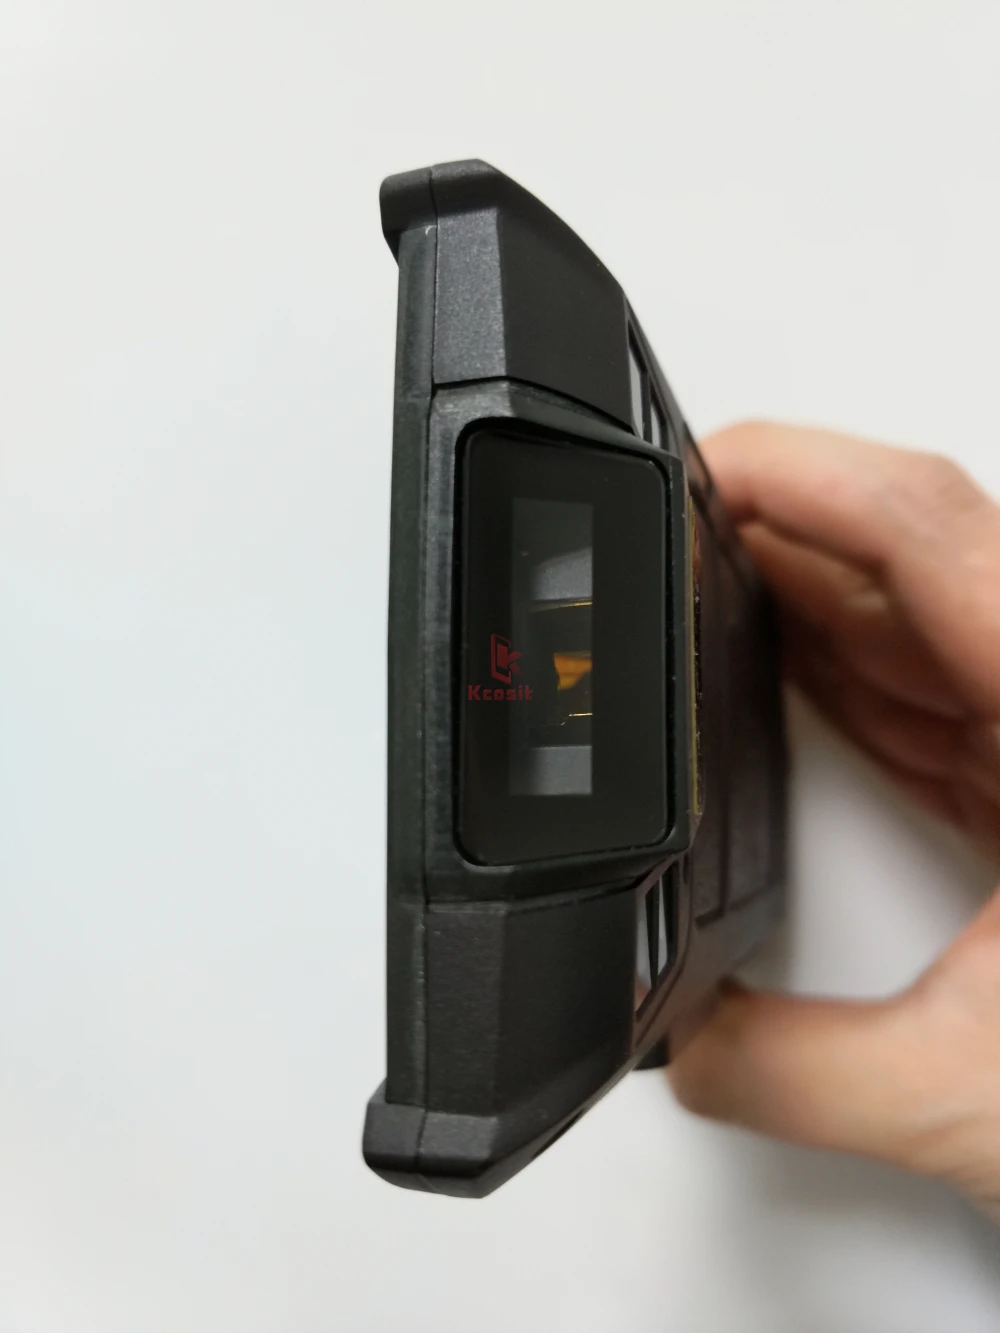 Kcosit 1D 2D лазерный сканер штрих-кода Android 6,0 IP67 водонепроницаемый телефон КПК ручной терминал сбора данных логистика инвентаризации